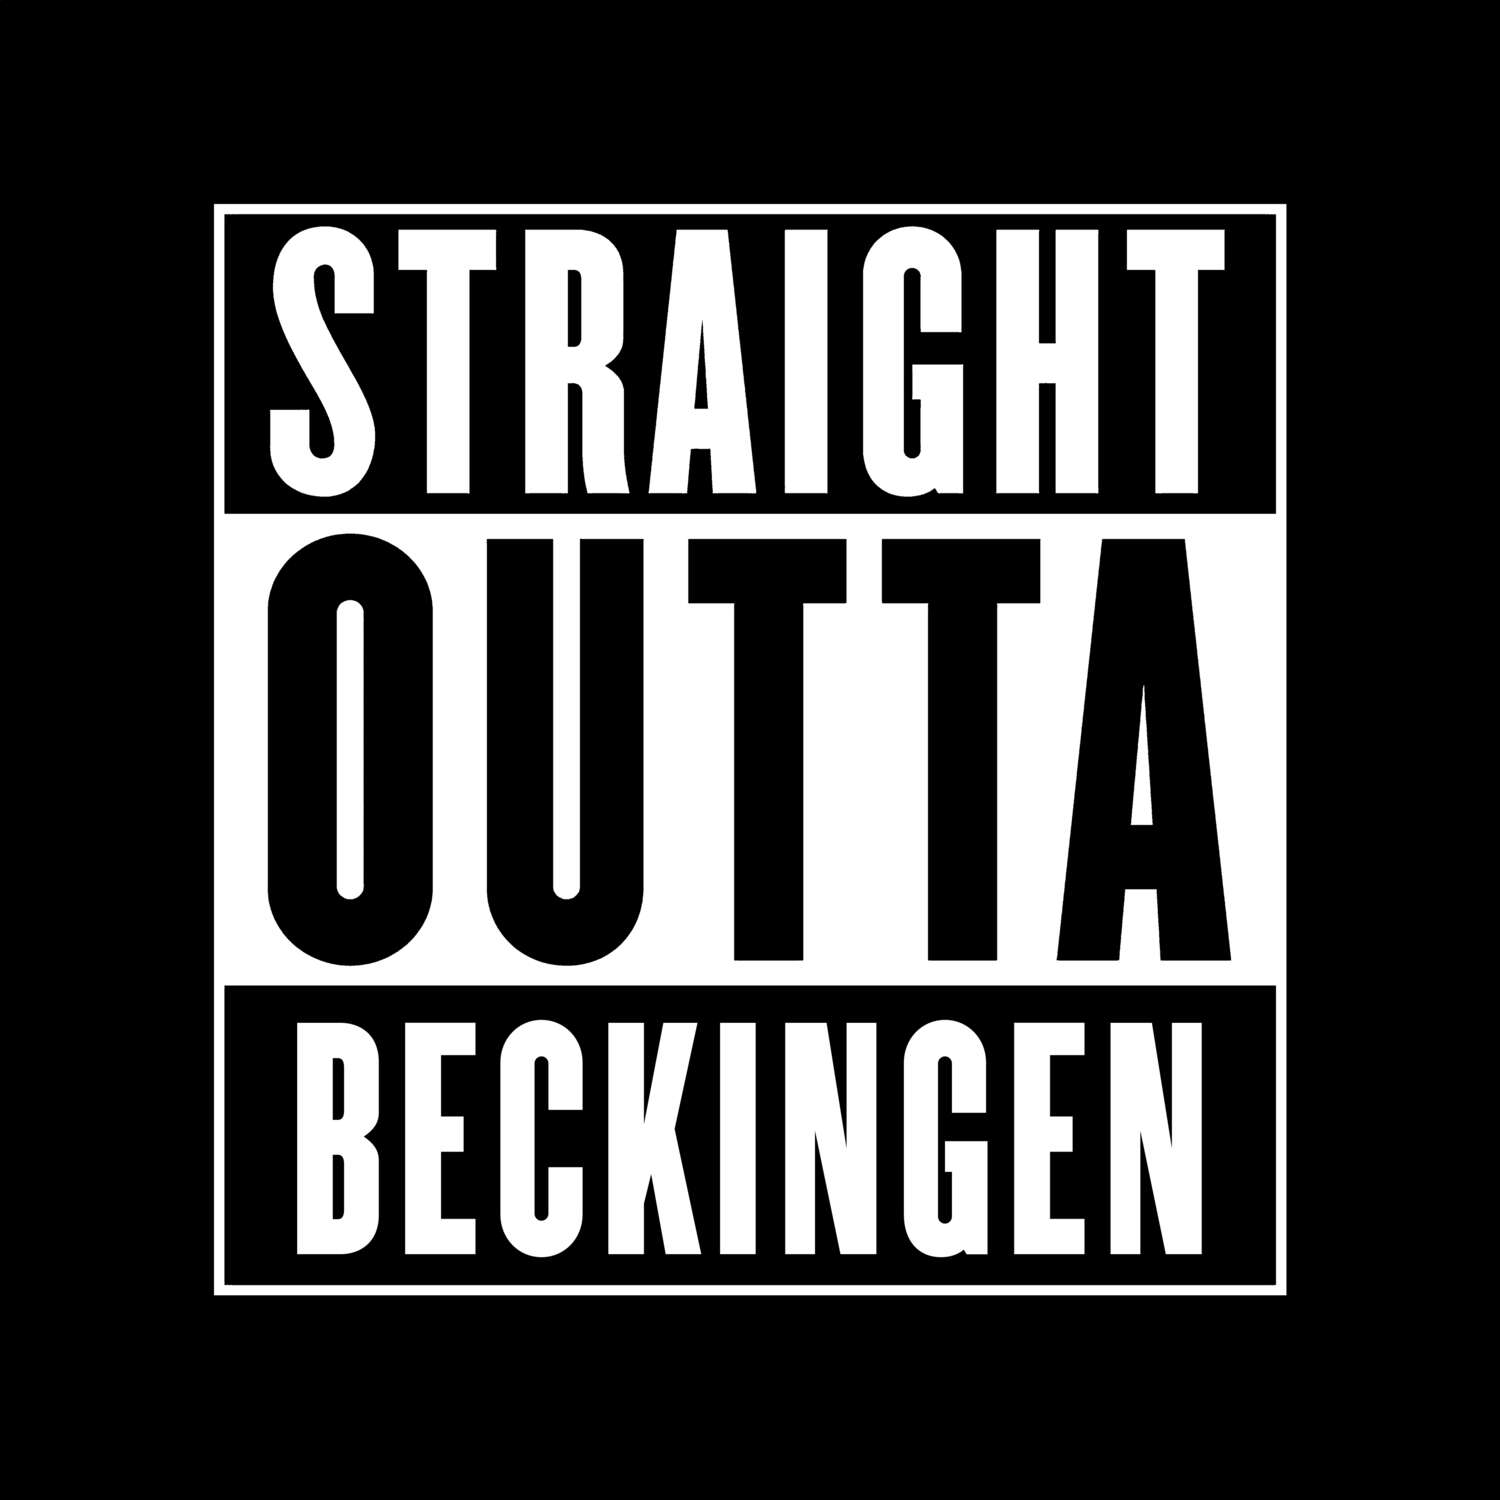 Beckingen T-Shirt »Straight Outta«